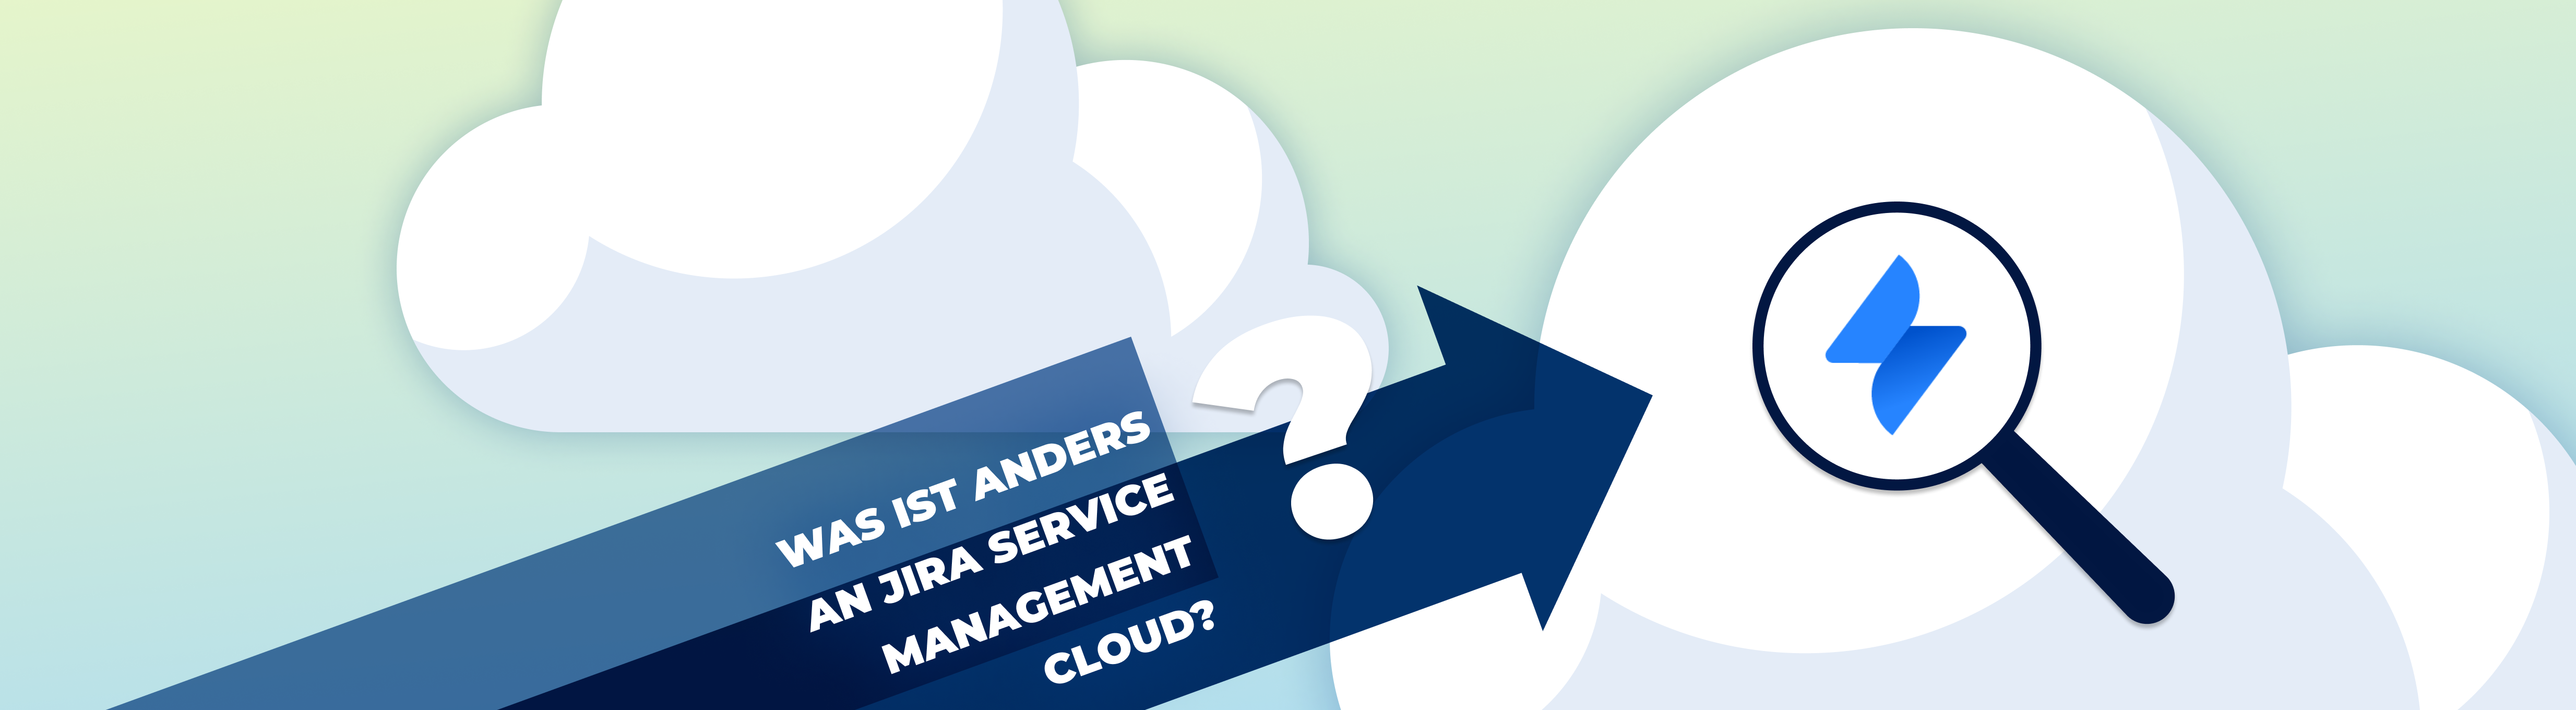 Ein Header mit dem Logo von Jira Service Management und der Frage "Was ist anders an Jira Service Management Cloud?"